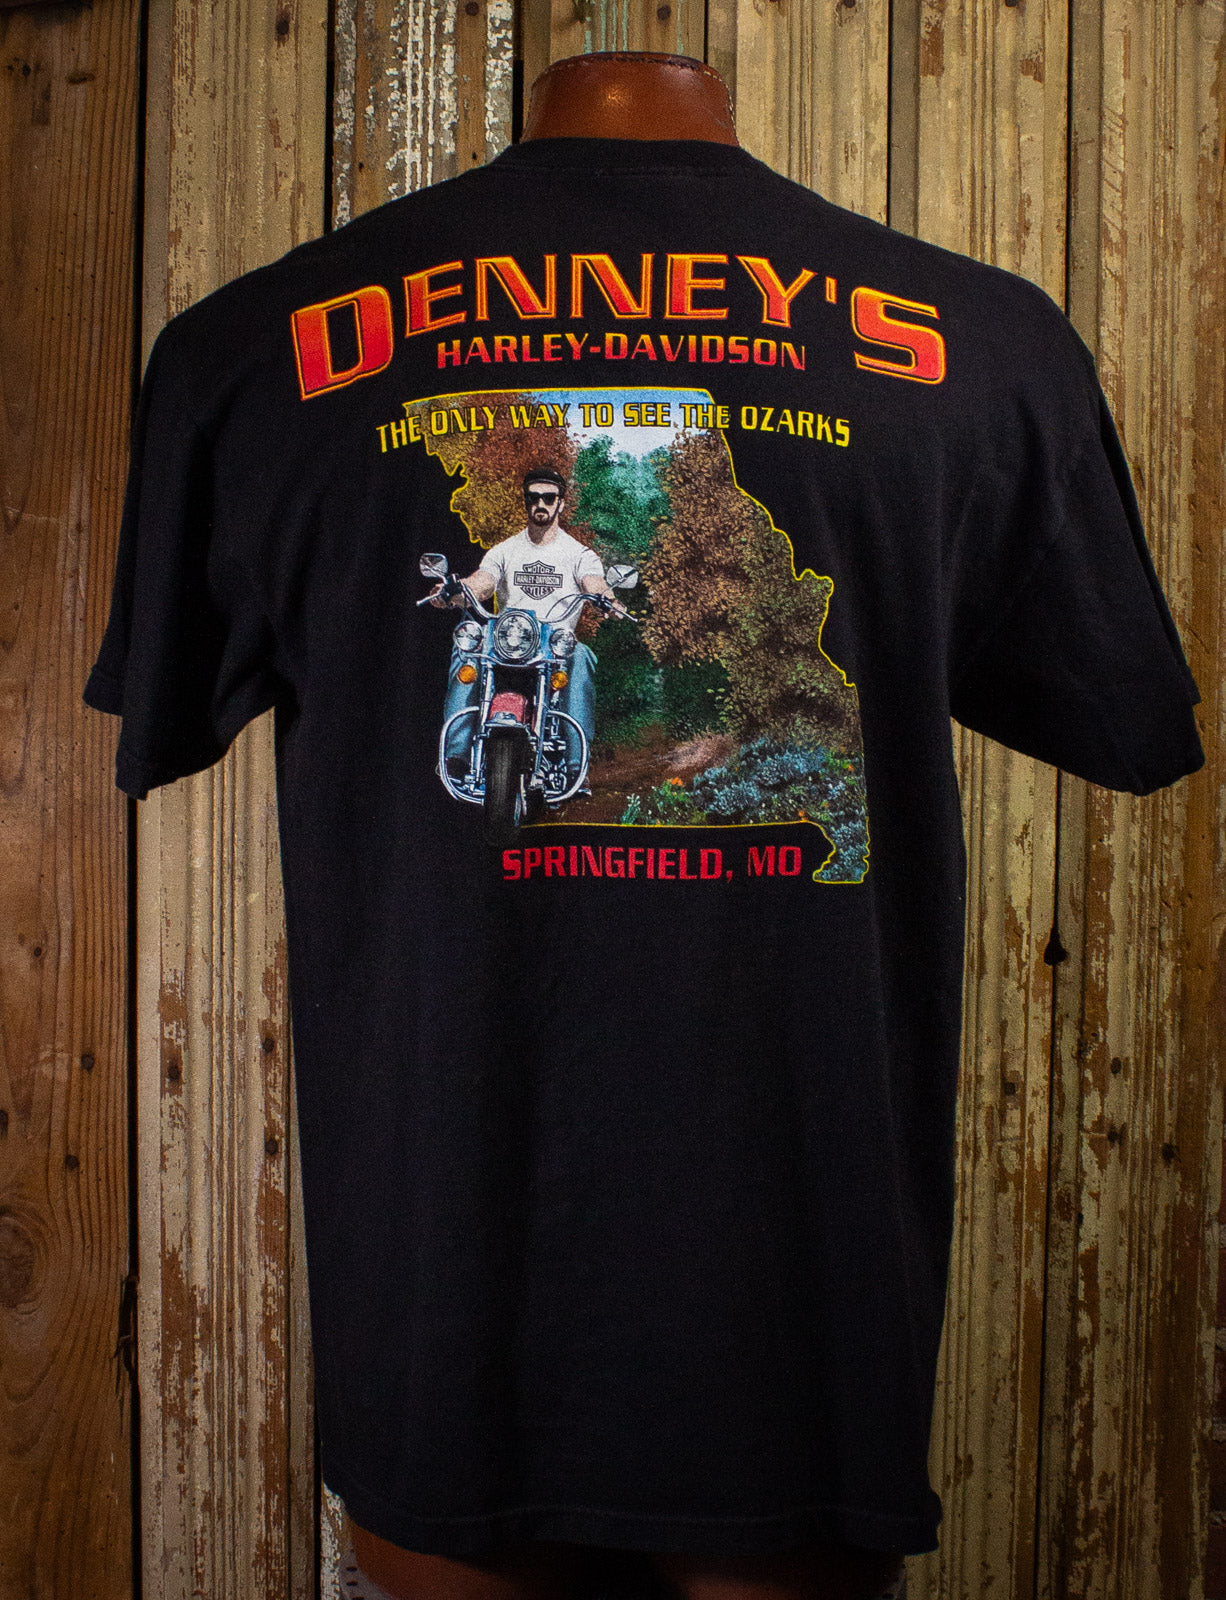 Vintage Harley Davidson Snake and Dagger Graphic T Shirt 2002 Black XL